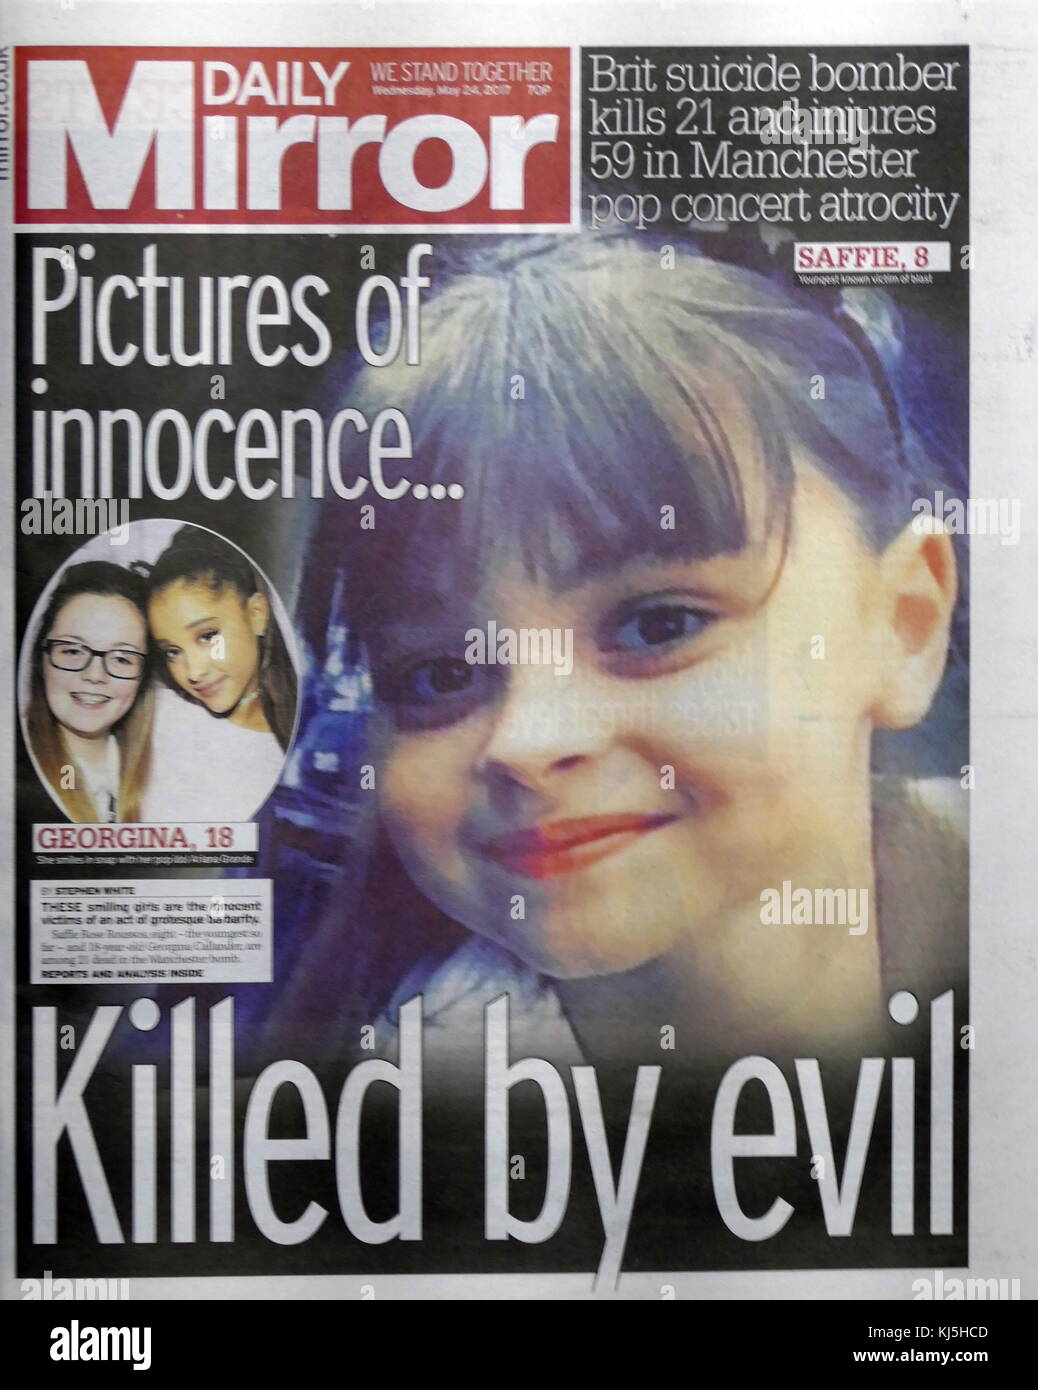 Britische Zeitung Schlagzeile und Front Page, in den Tagen nach dem 22. Mai 2017, Selbstmord, an der Manchester Arena in Manchester, England durchgeführt, nach einem Konzert der amerikanischen Sängerin Ariana Grande. Stockfoto